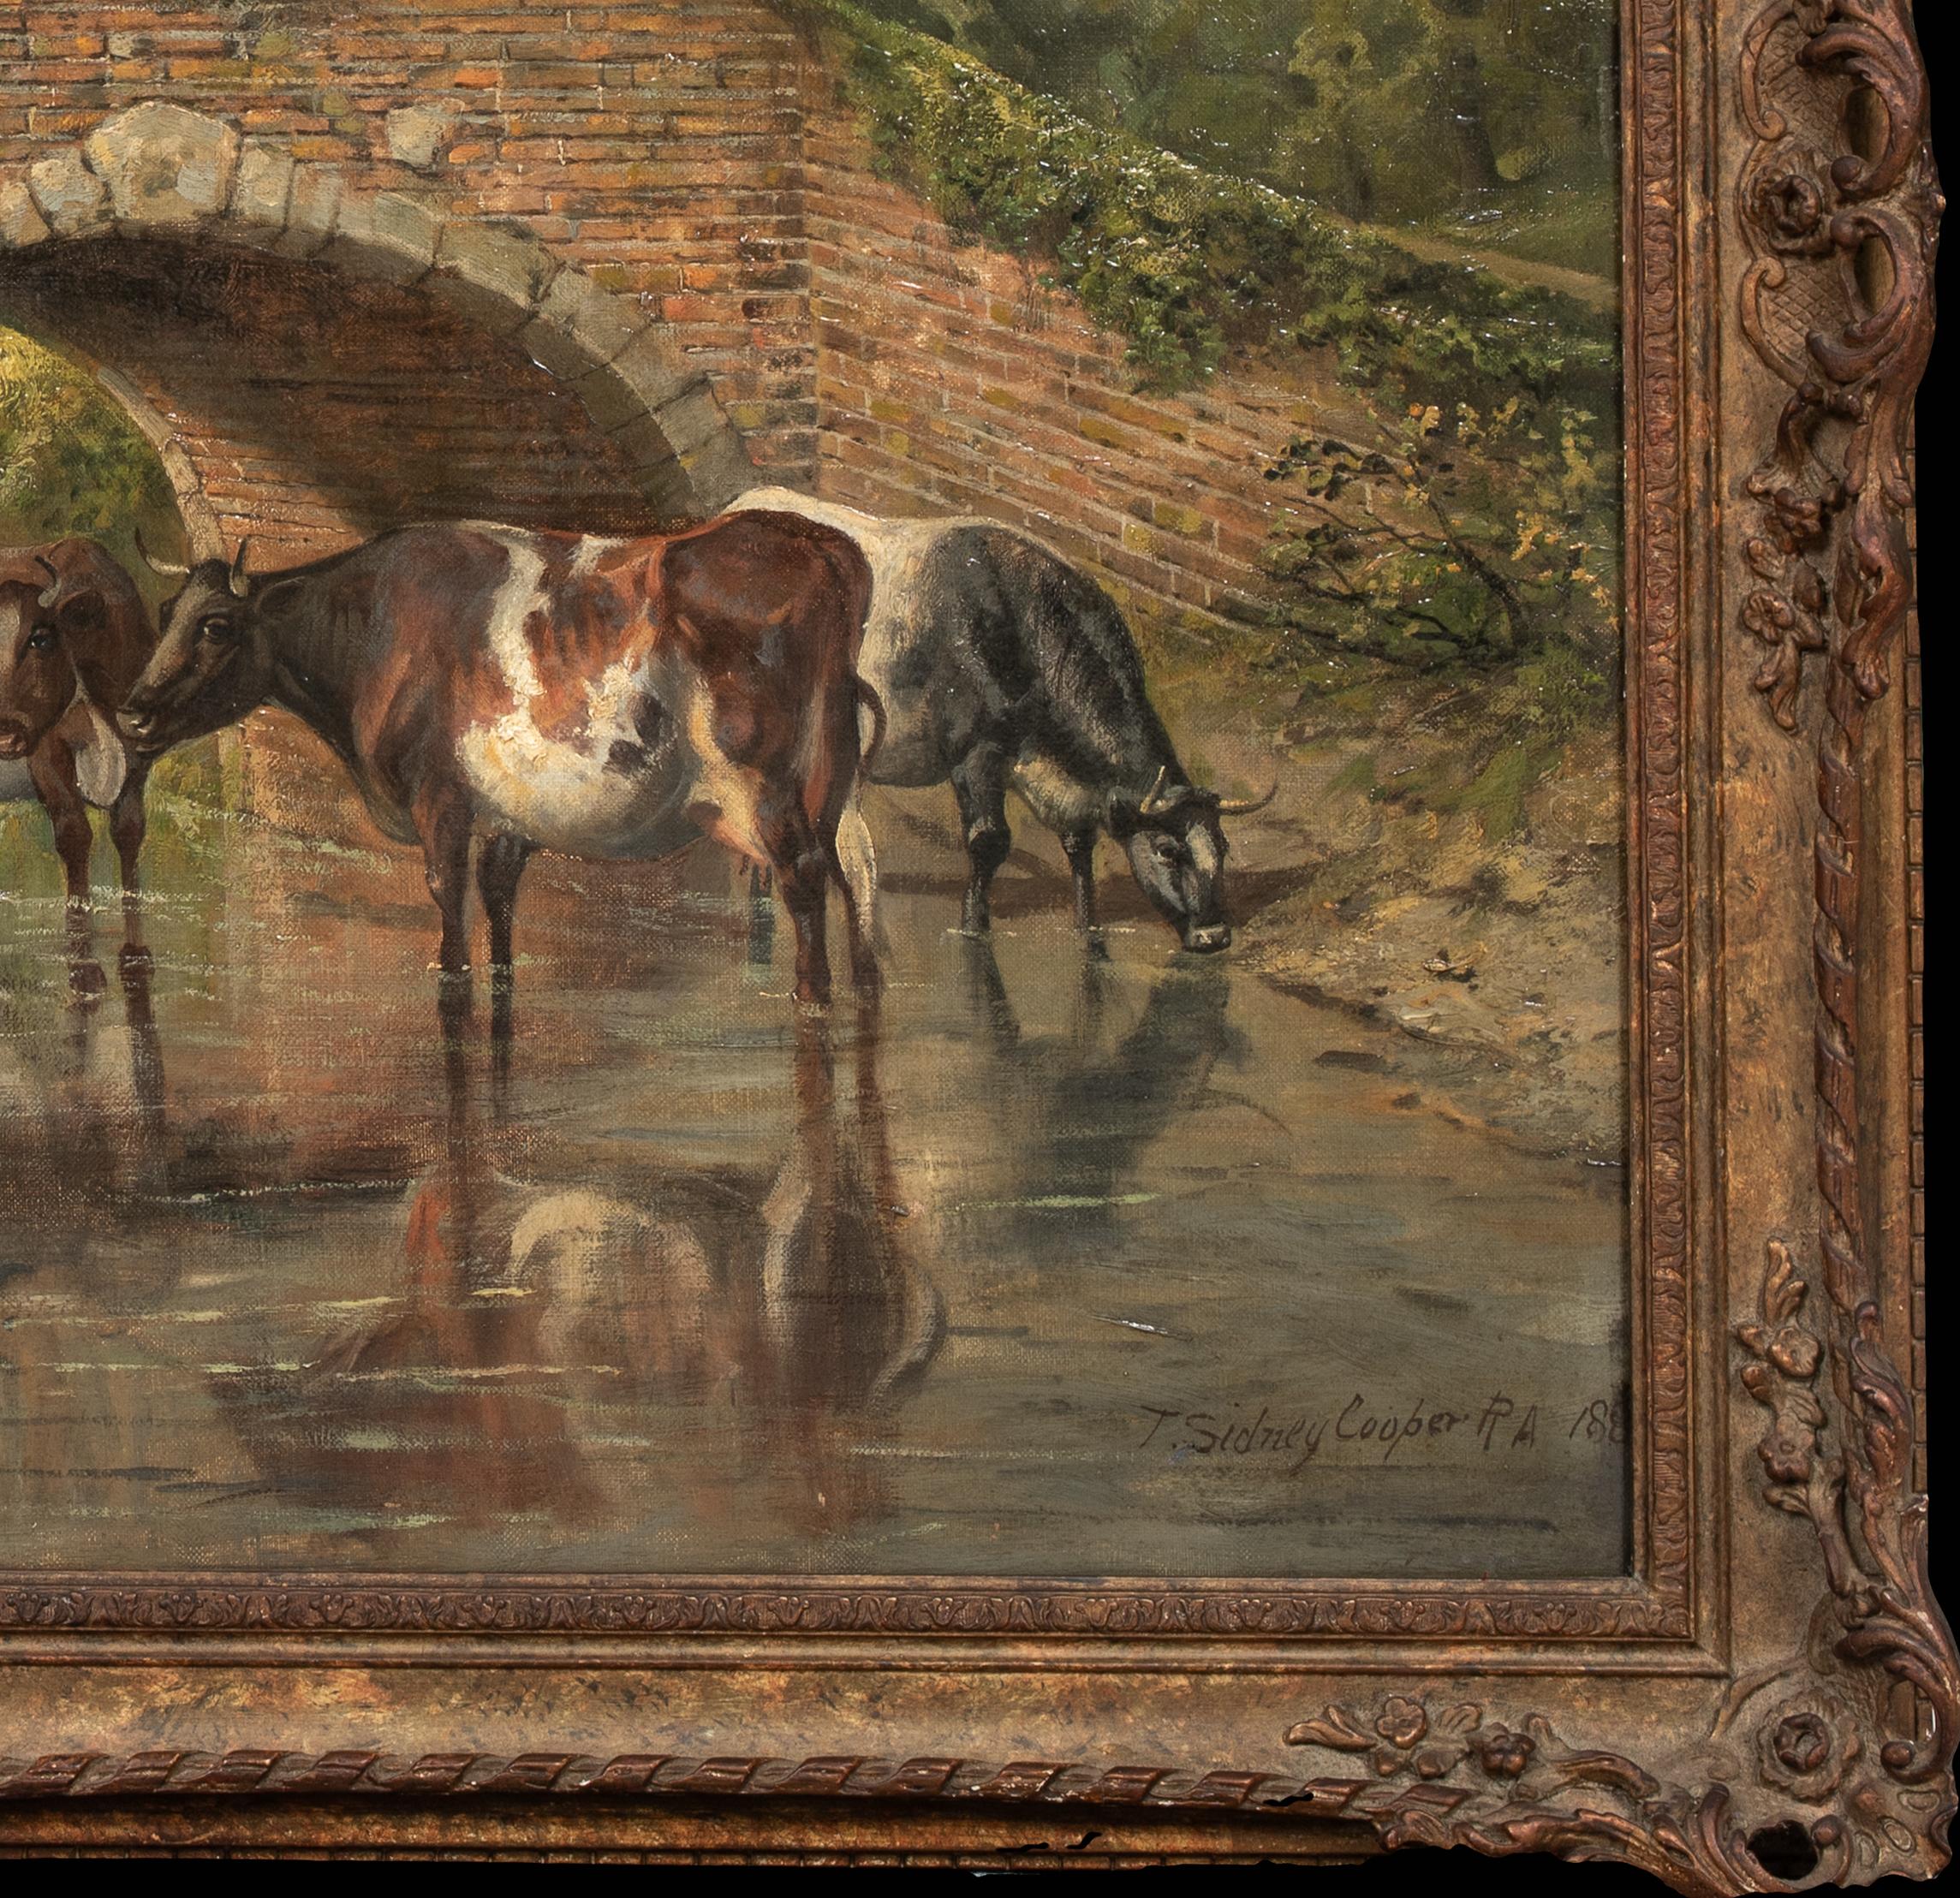 Bétail s'abreuvant au ruisseau, 19e siècle 

par THOMAS SIDNEY COOPER (1803-1902) 

Grand paysage anglais du XIXe siècle avec du bétail s'abreuvant au bord d'un ruisseau avec un pont au-delà, huile sur toile de Thomas Sidney Cooper. Exemple